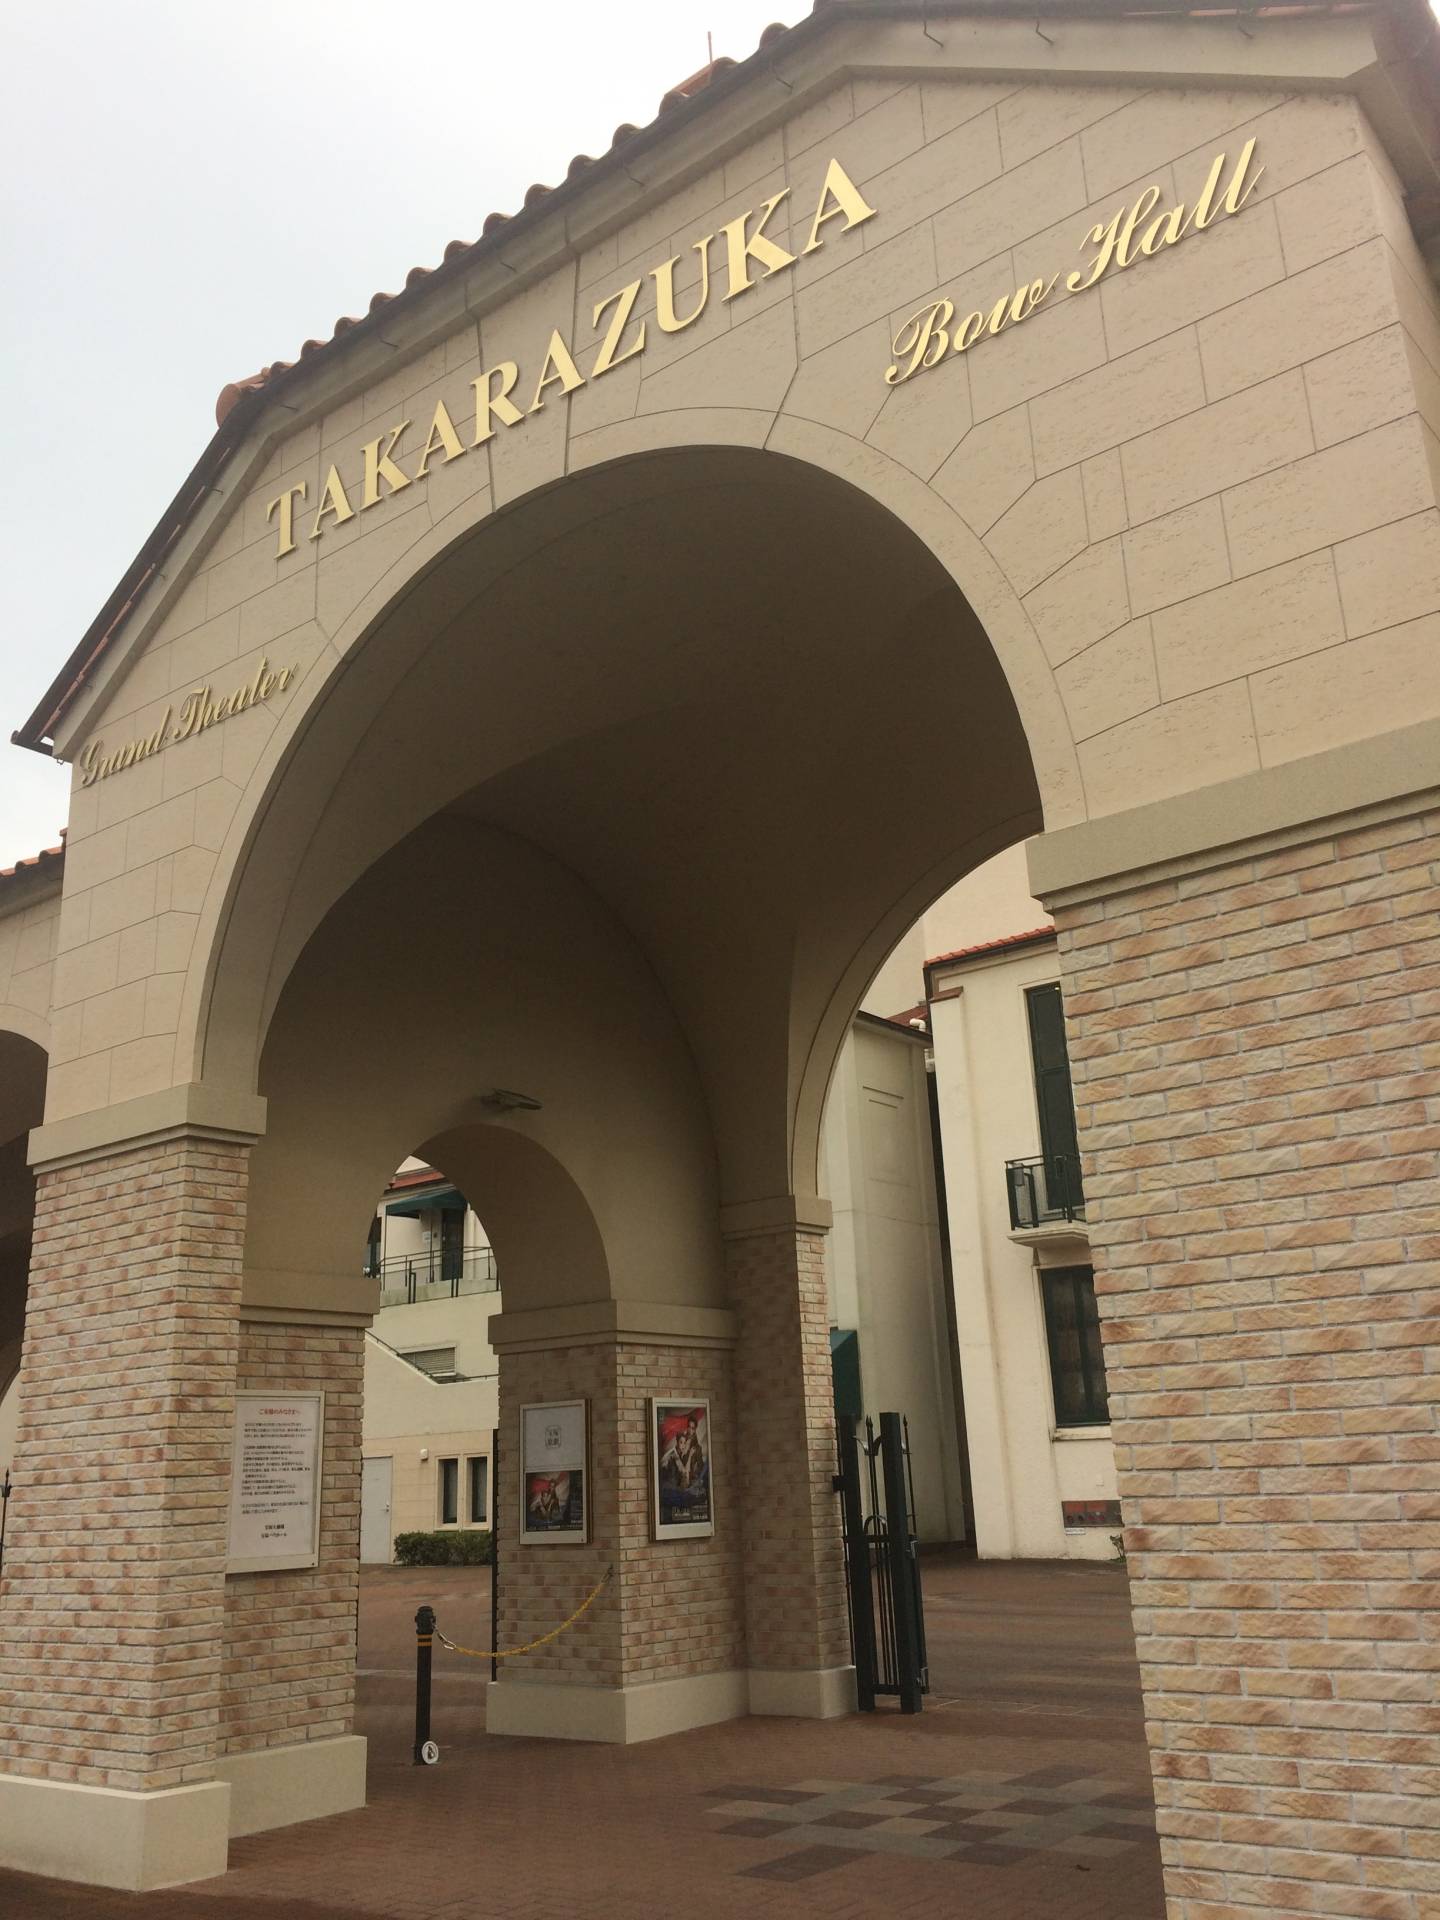 Der Eingang zum Takarazuka Grand Theater im Städtchen Takarazuka mit Torbögen und goldener Schrift.